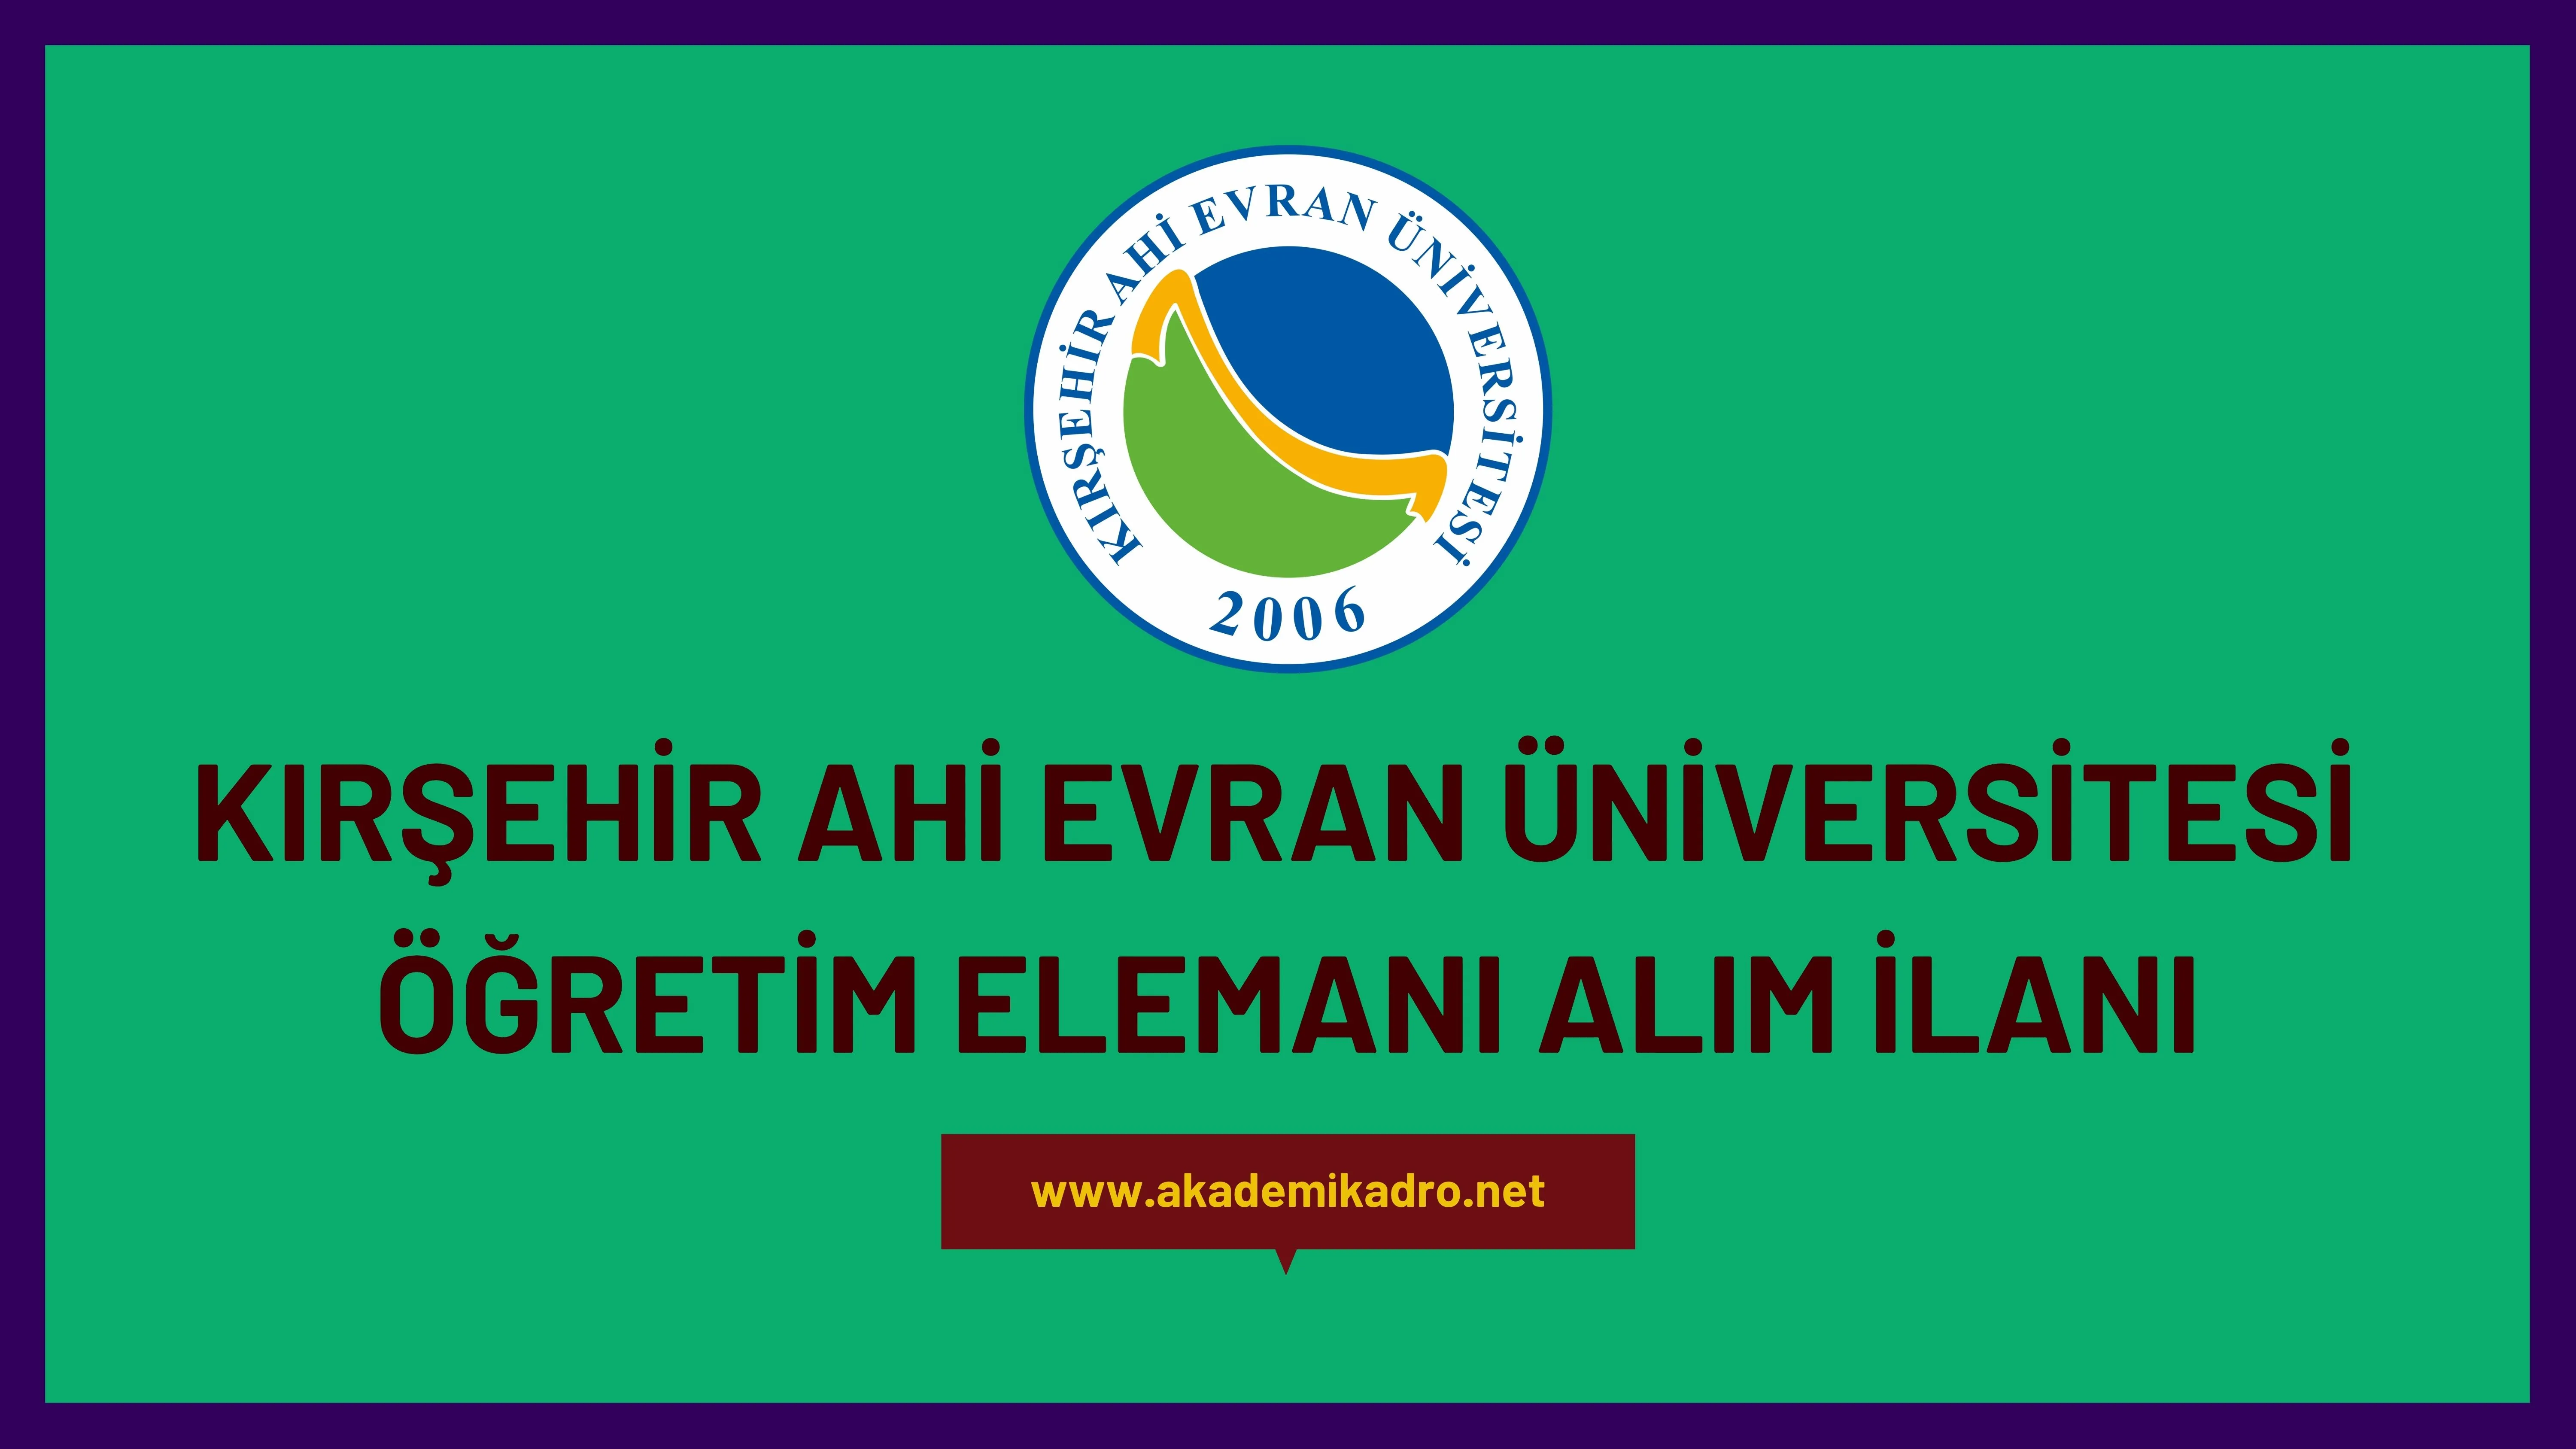 Kırşehir Ahi Evran Üniversitesi 17 Araştırma görevlisi ve 9 Öğretim görevlisi alacak.